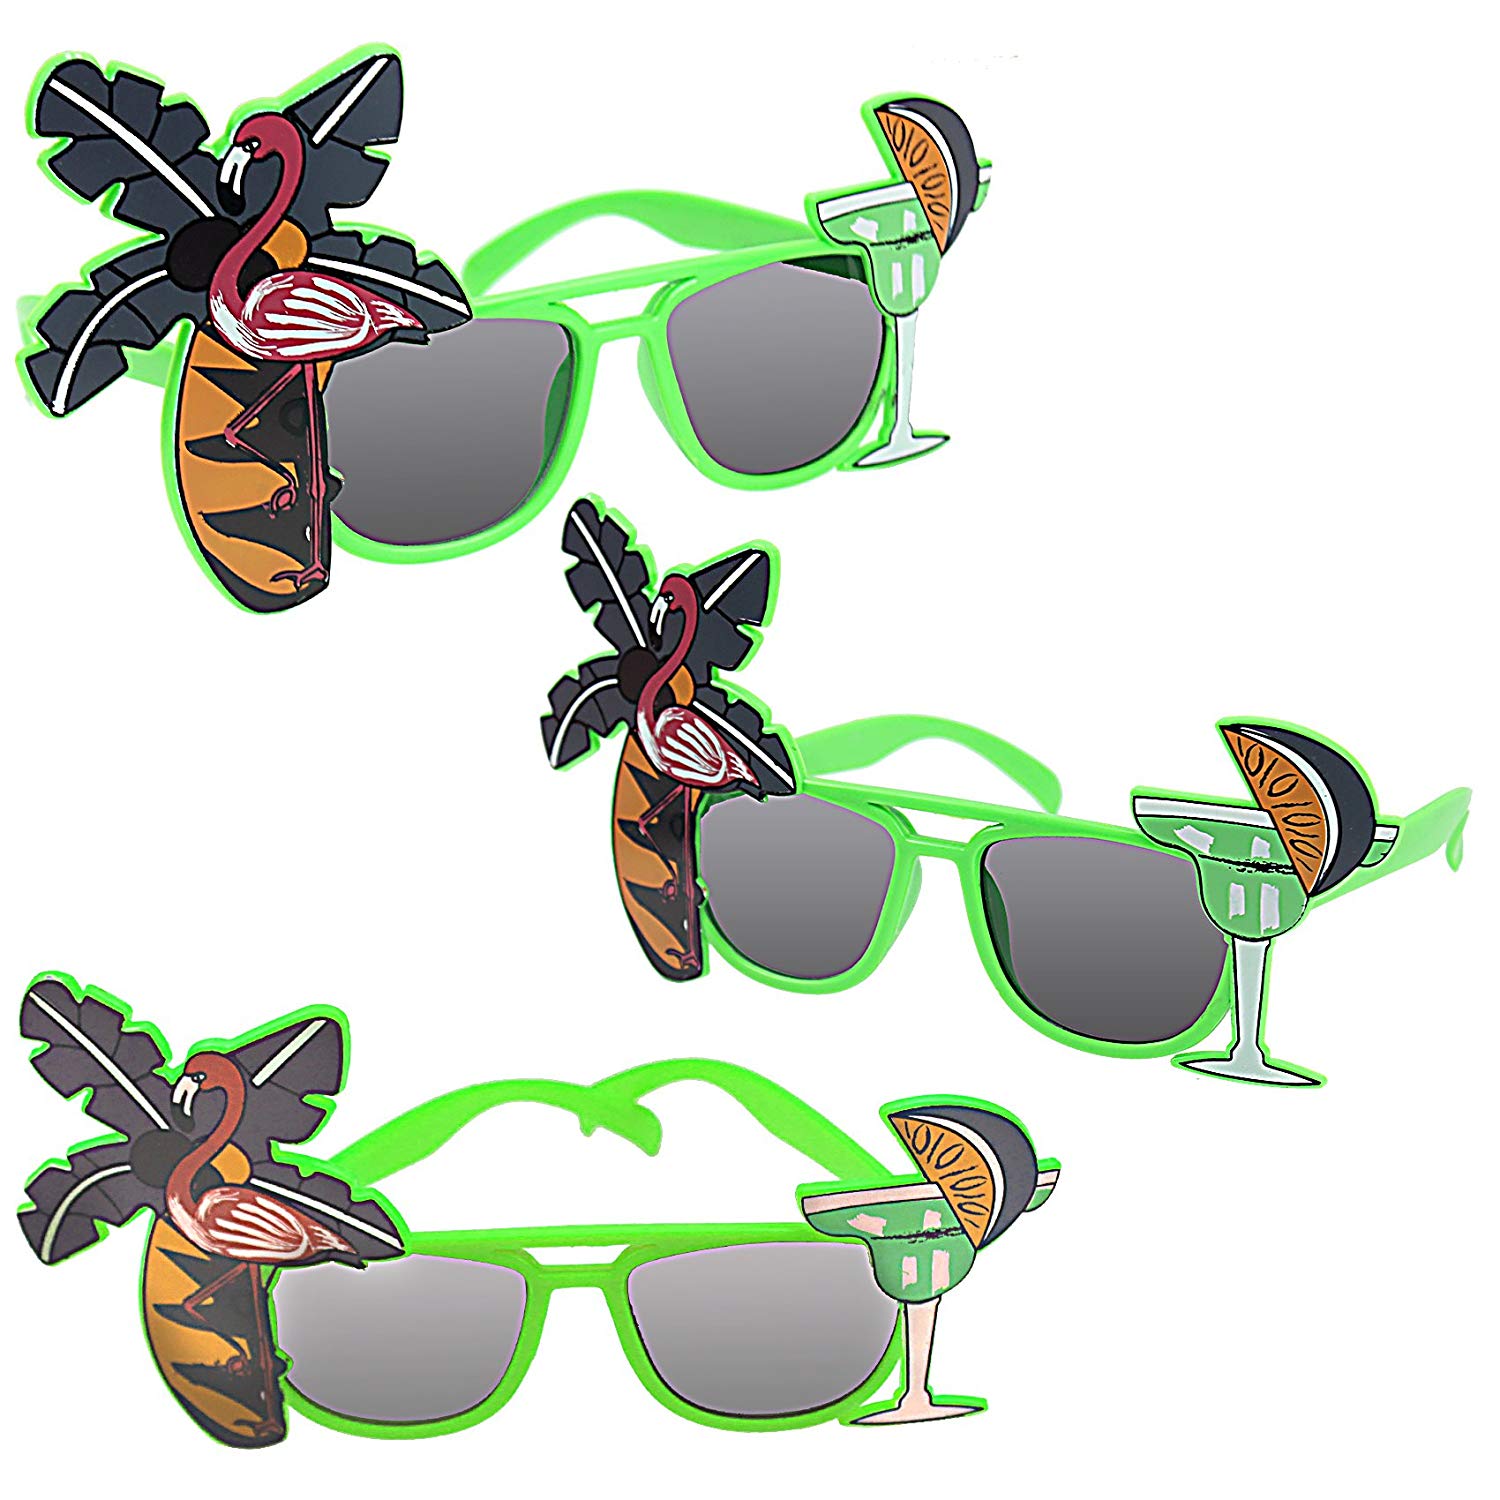 Aloha Luau Party Costume Sunglasses Fun Shades Green